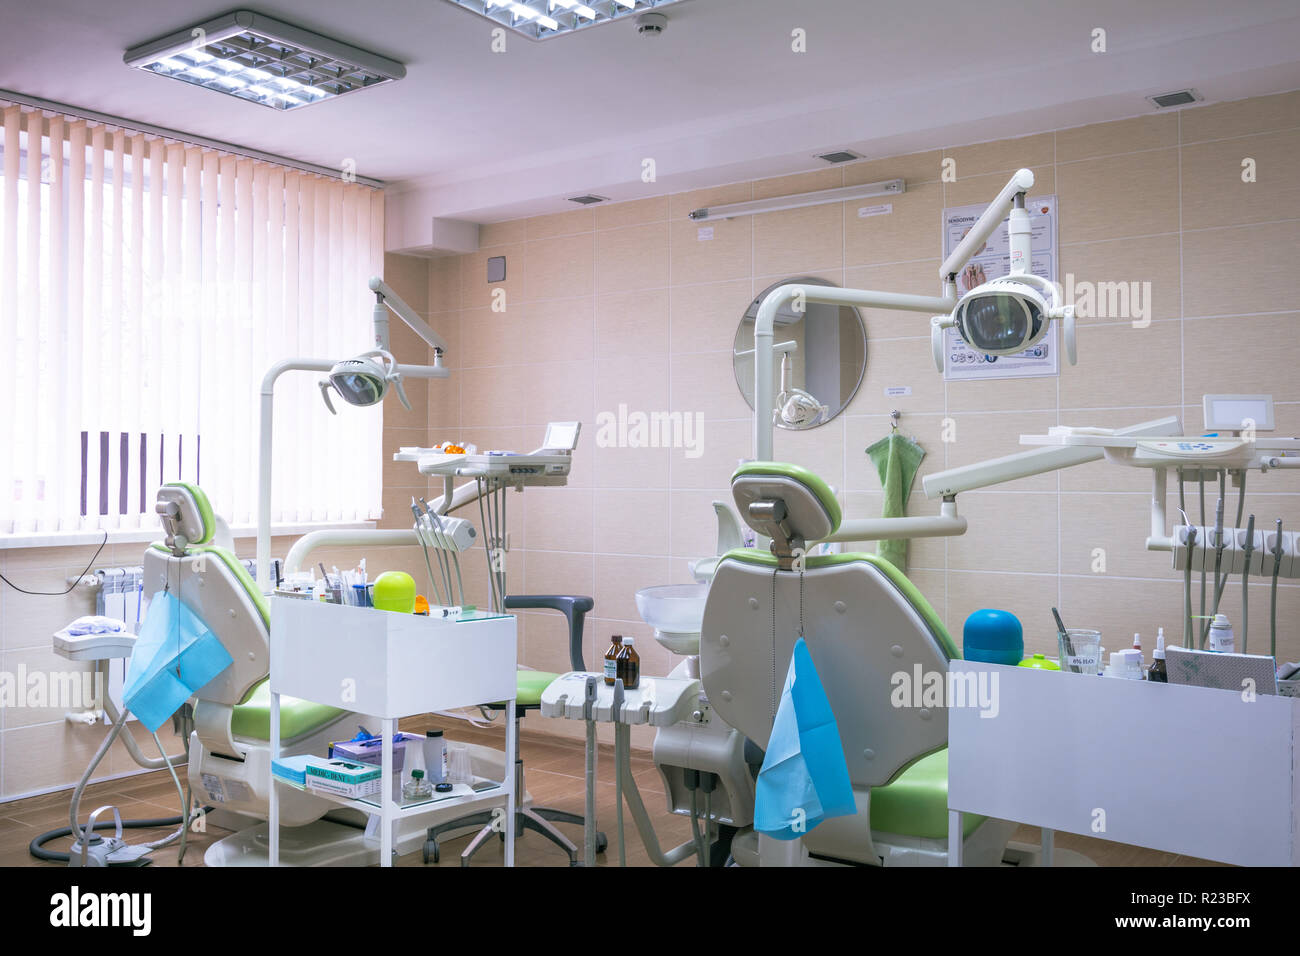 Zahnmedizinische Klinik interior design mit mehreren Zahnarztstuhl und Werkzeuge. Moderne Zahnarztpraxis Büro mit grünen Stühlen. Zahnarztpraxis. Stockfoto